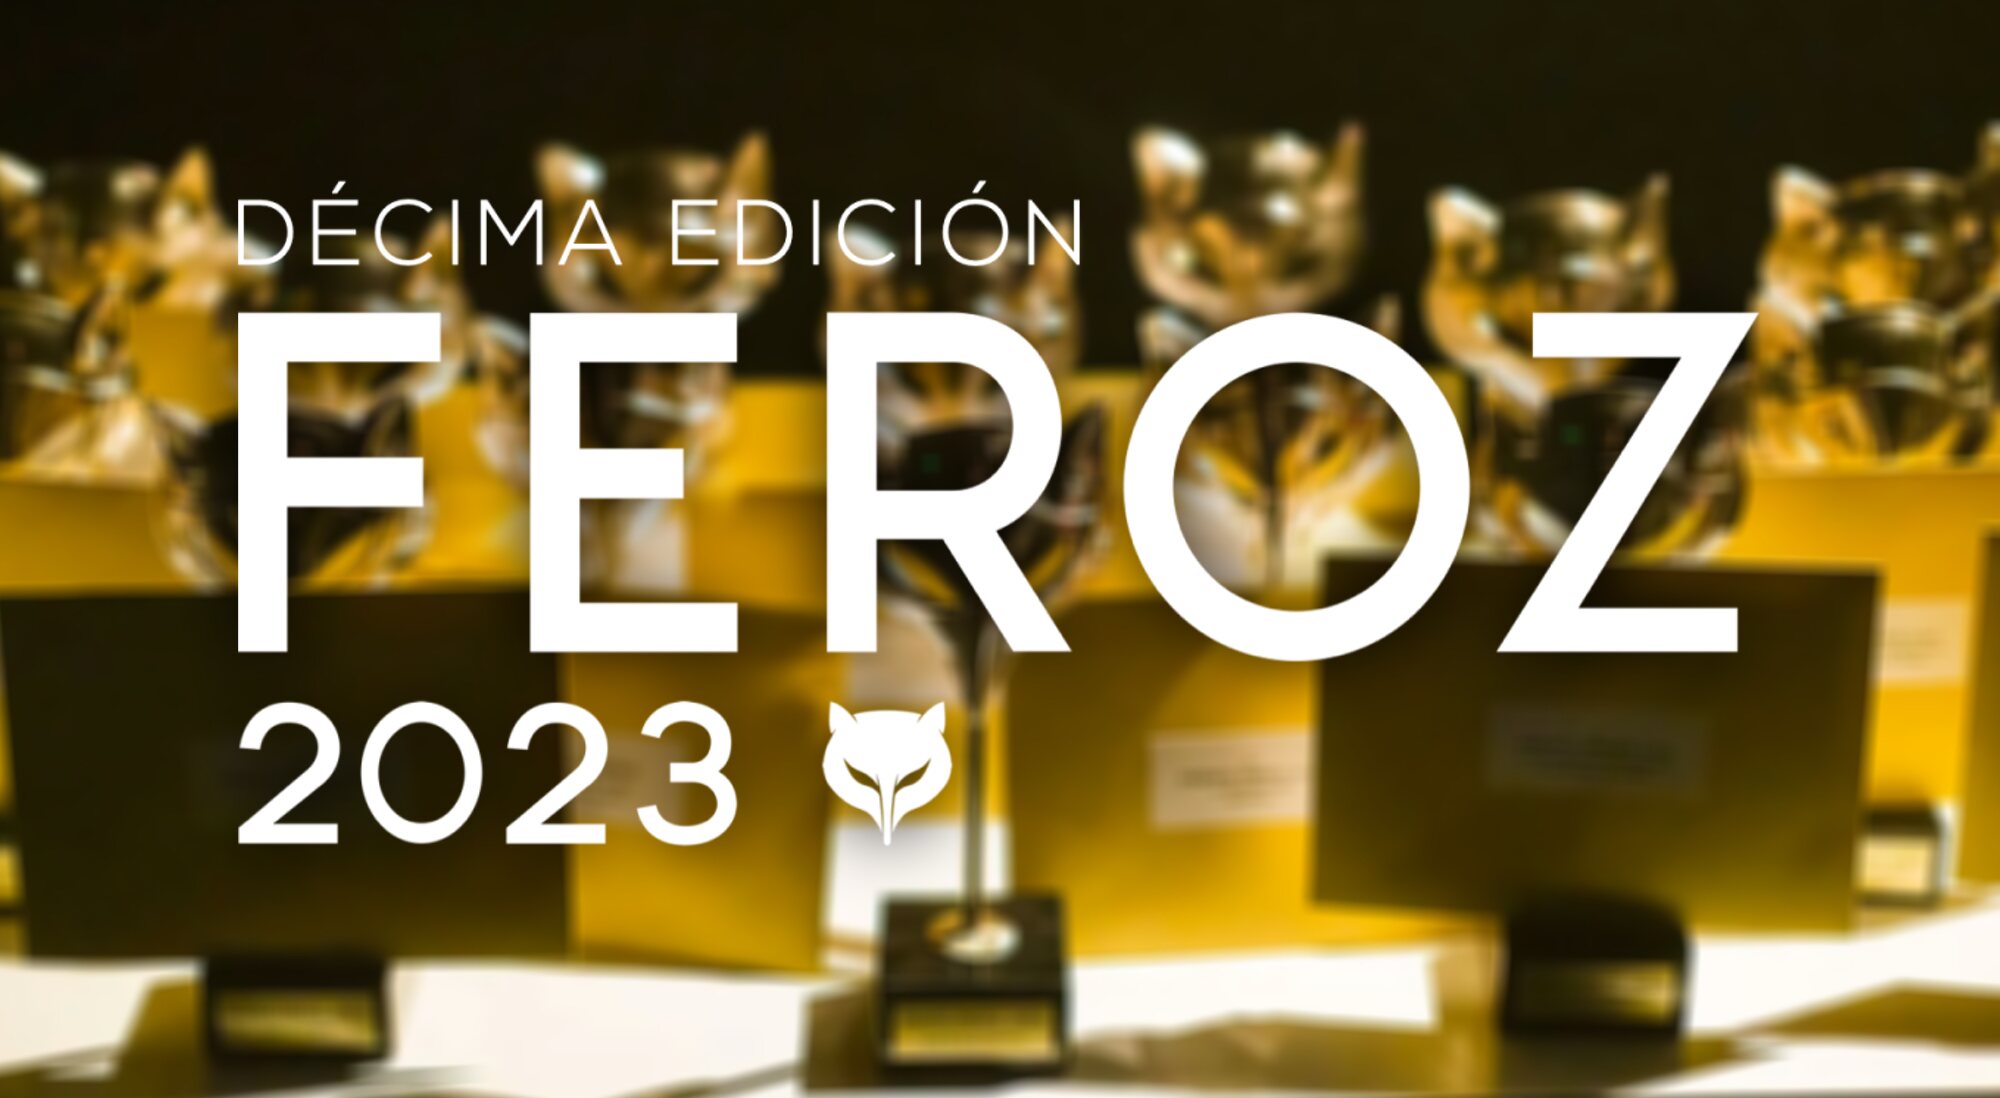 Premios Feroz 2023